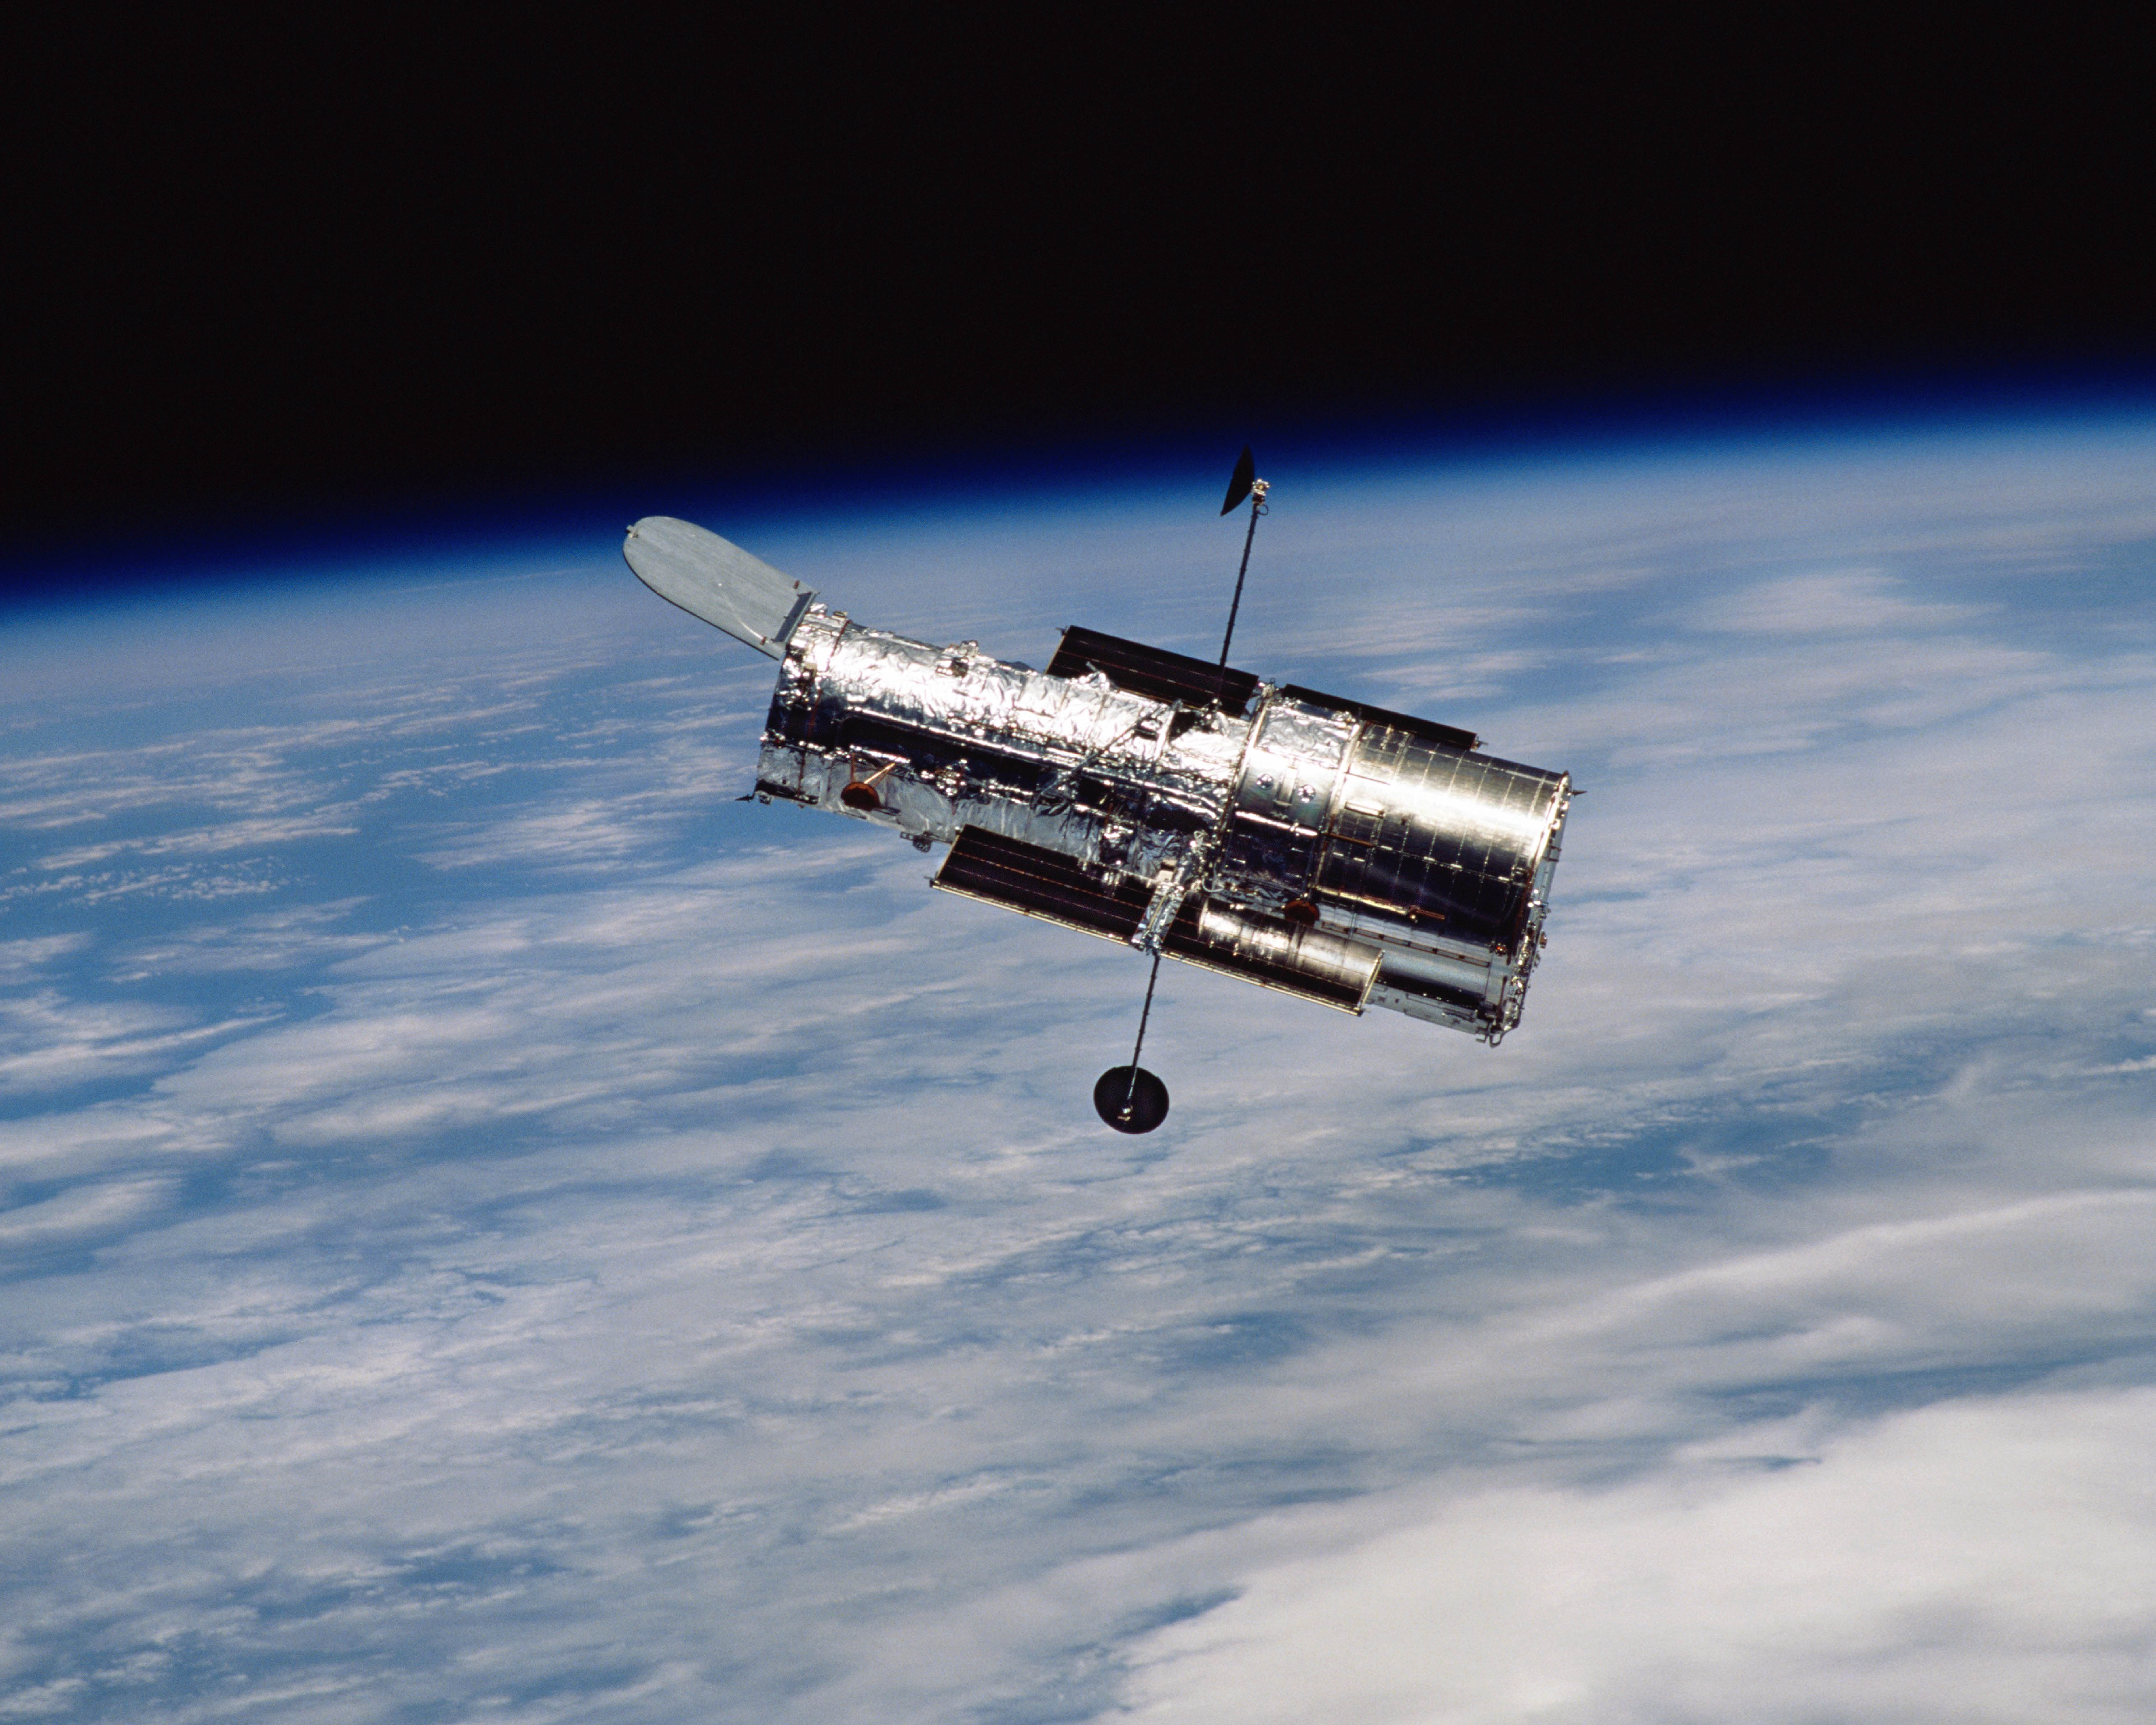 Hubble Space Image flex